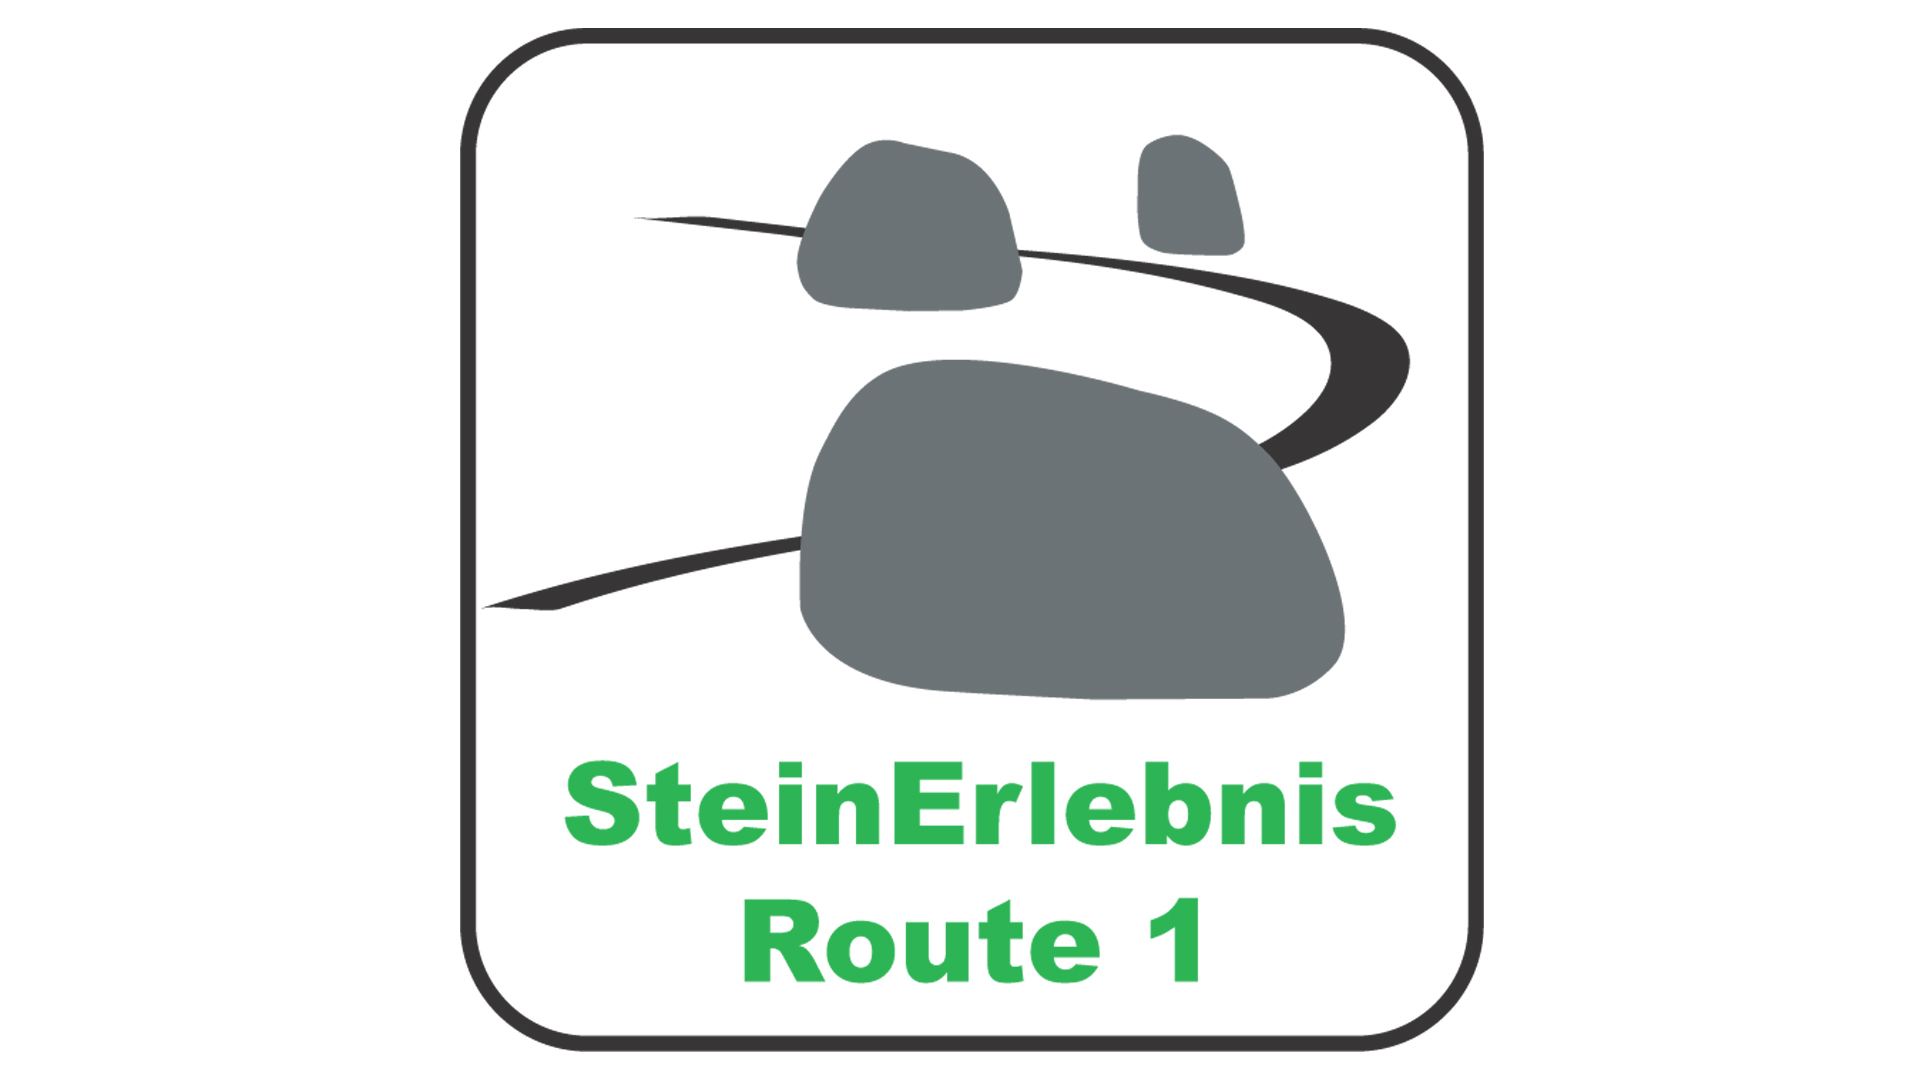 steinerlebnis-route1_16-9